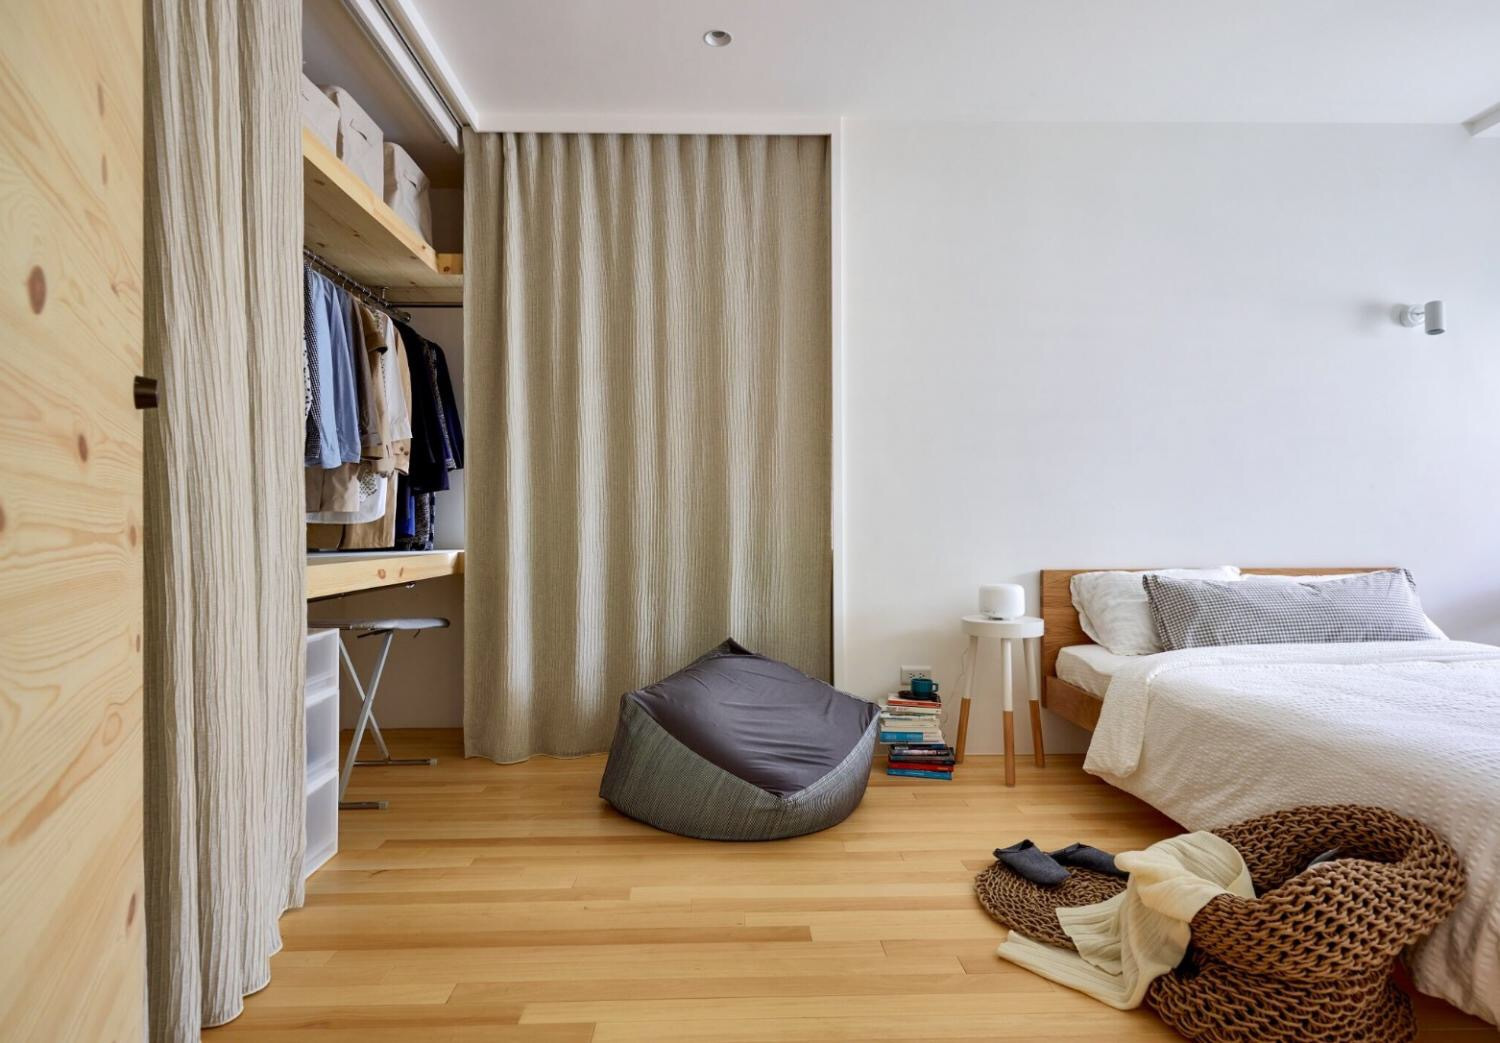 润都御园三居室丨日式风格融于自然的装修设计